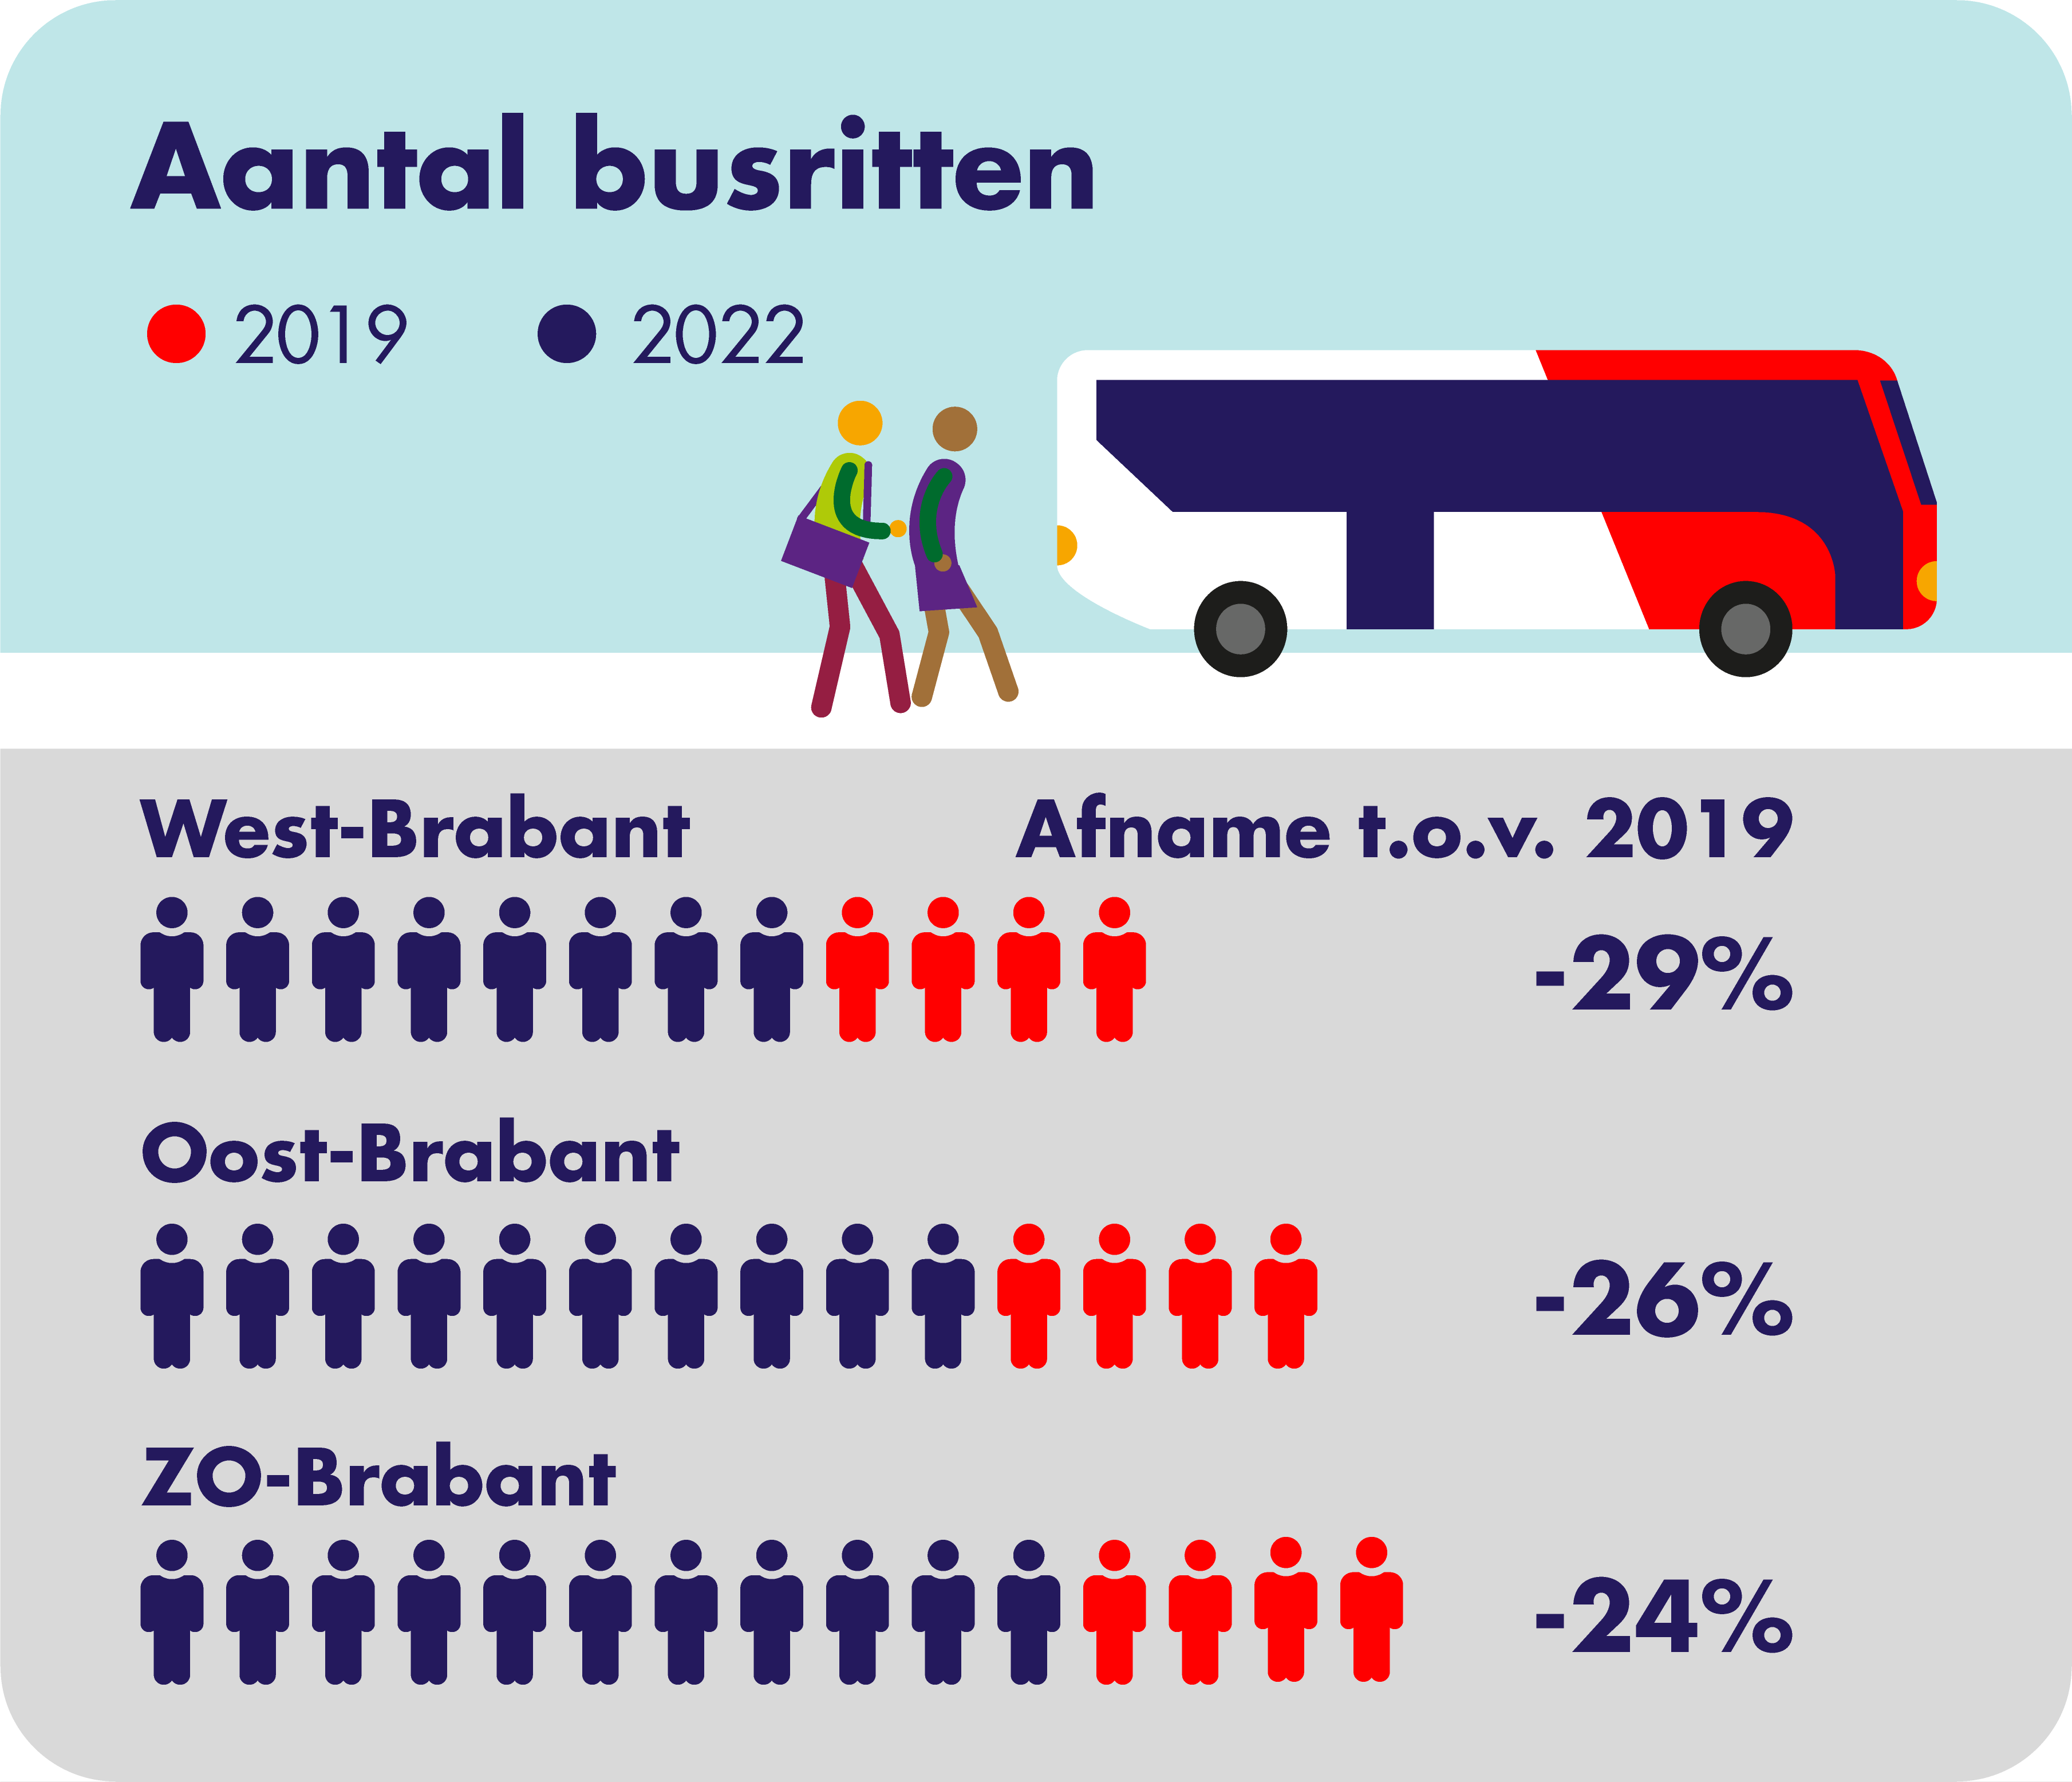 Op deze afbeelding is het aantal gemaakte busritten per concessiegebied weergegeven. In 2022 is er ten opzichte van 2019 een afname. Voor West-Brabant 29%, voor Oost-Brabant 26% en voor Zuidoost-Brabant 24%.